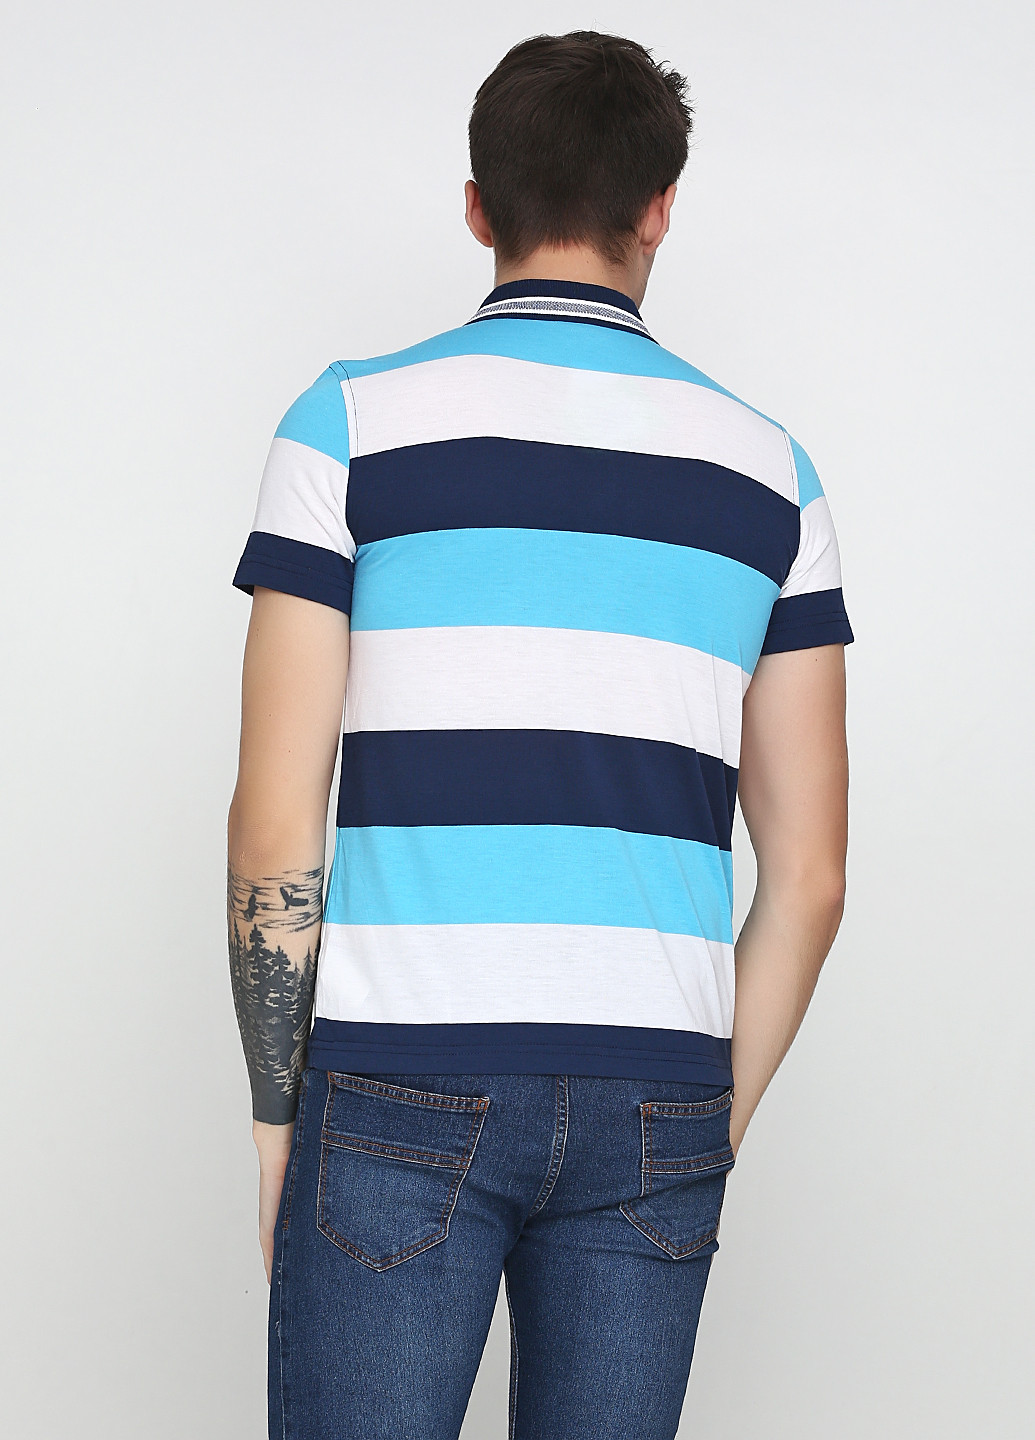 Цветная футболка-поло для мужчин DeFacto в полоску